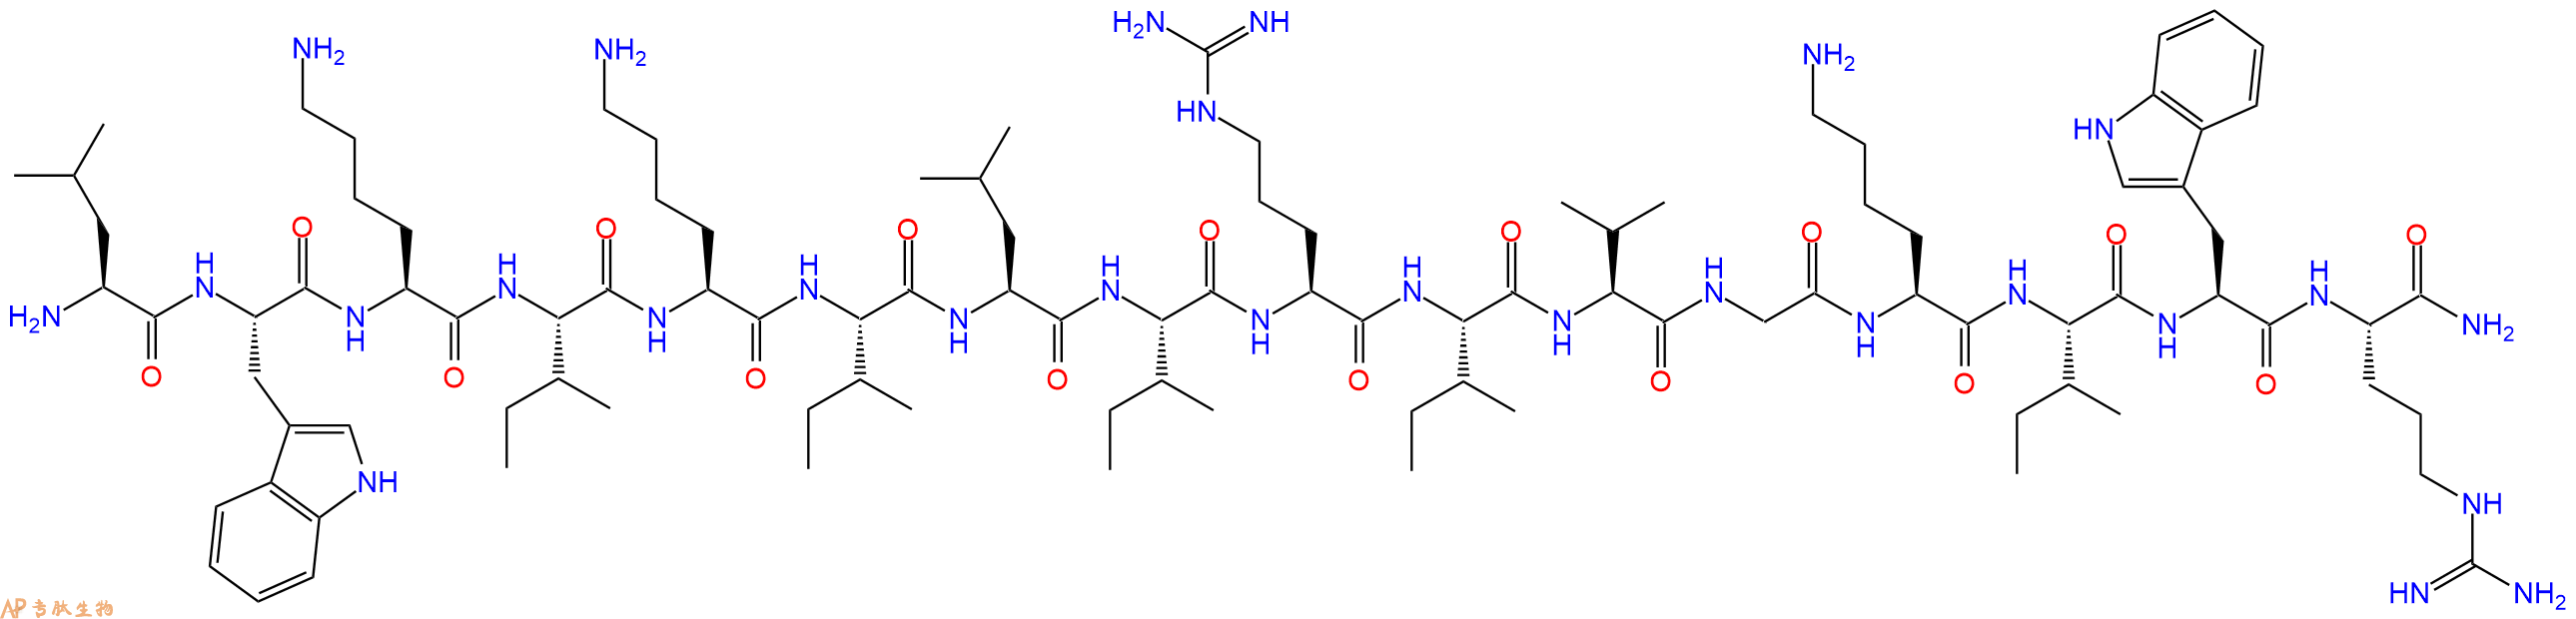 专肽生物产品十六肽LWKIKILIRIVGKIWR-NH2